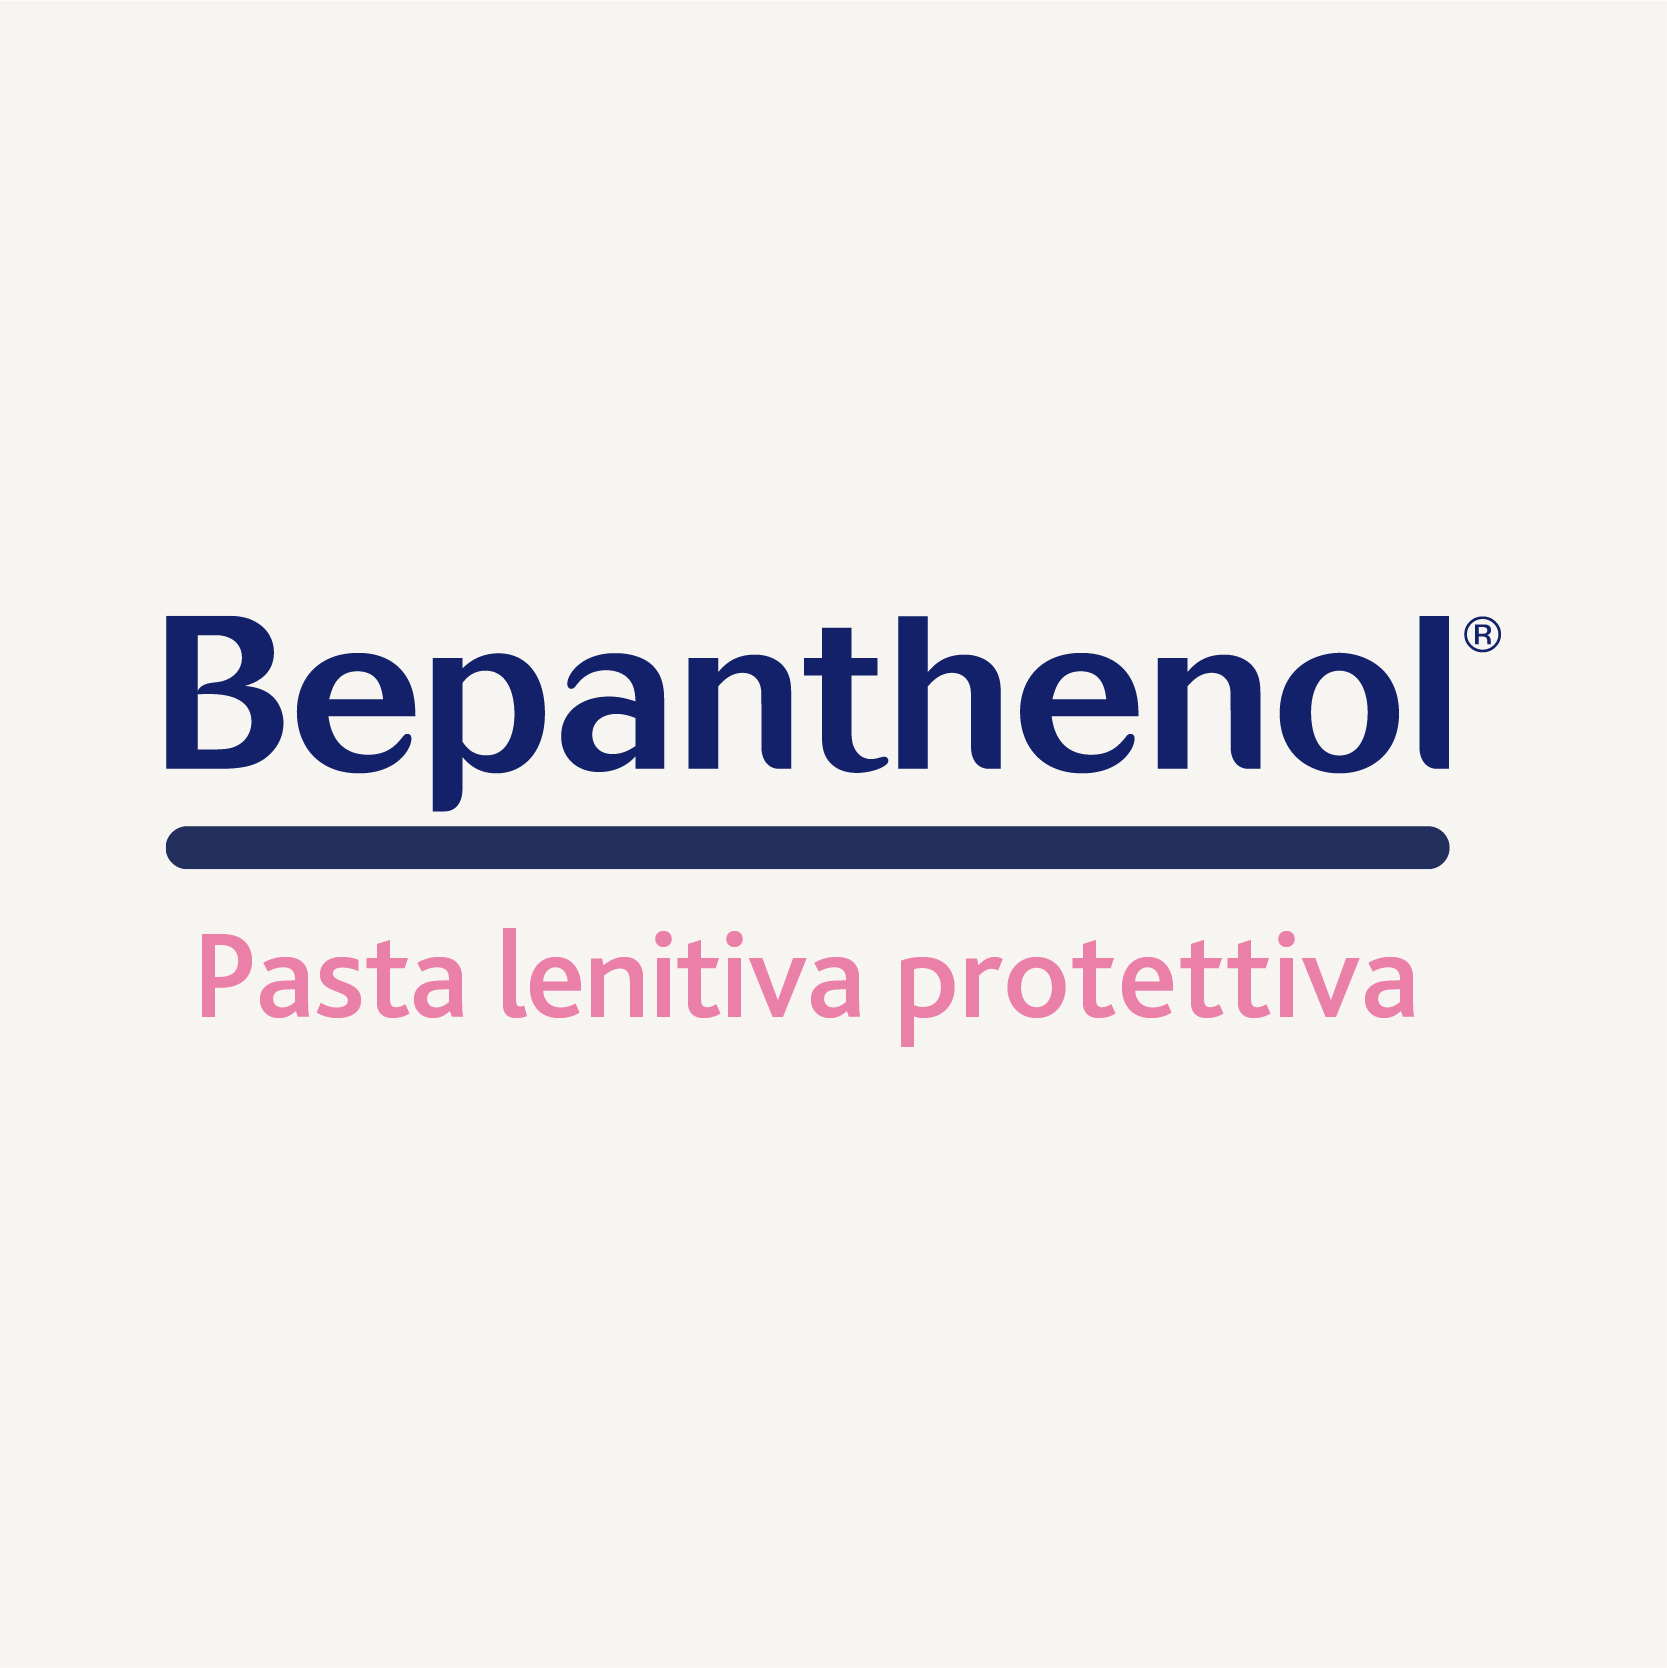 Bepanthenol